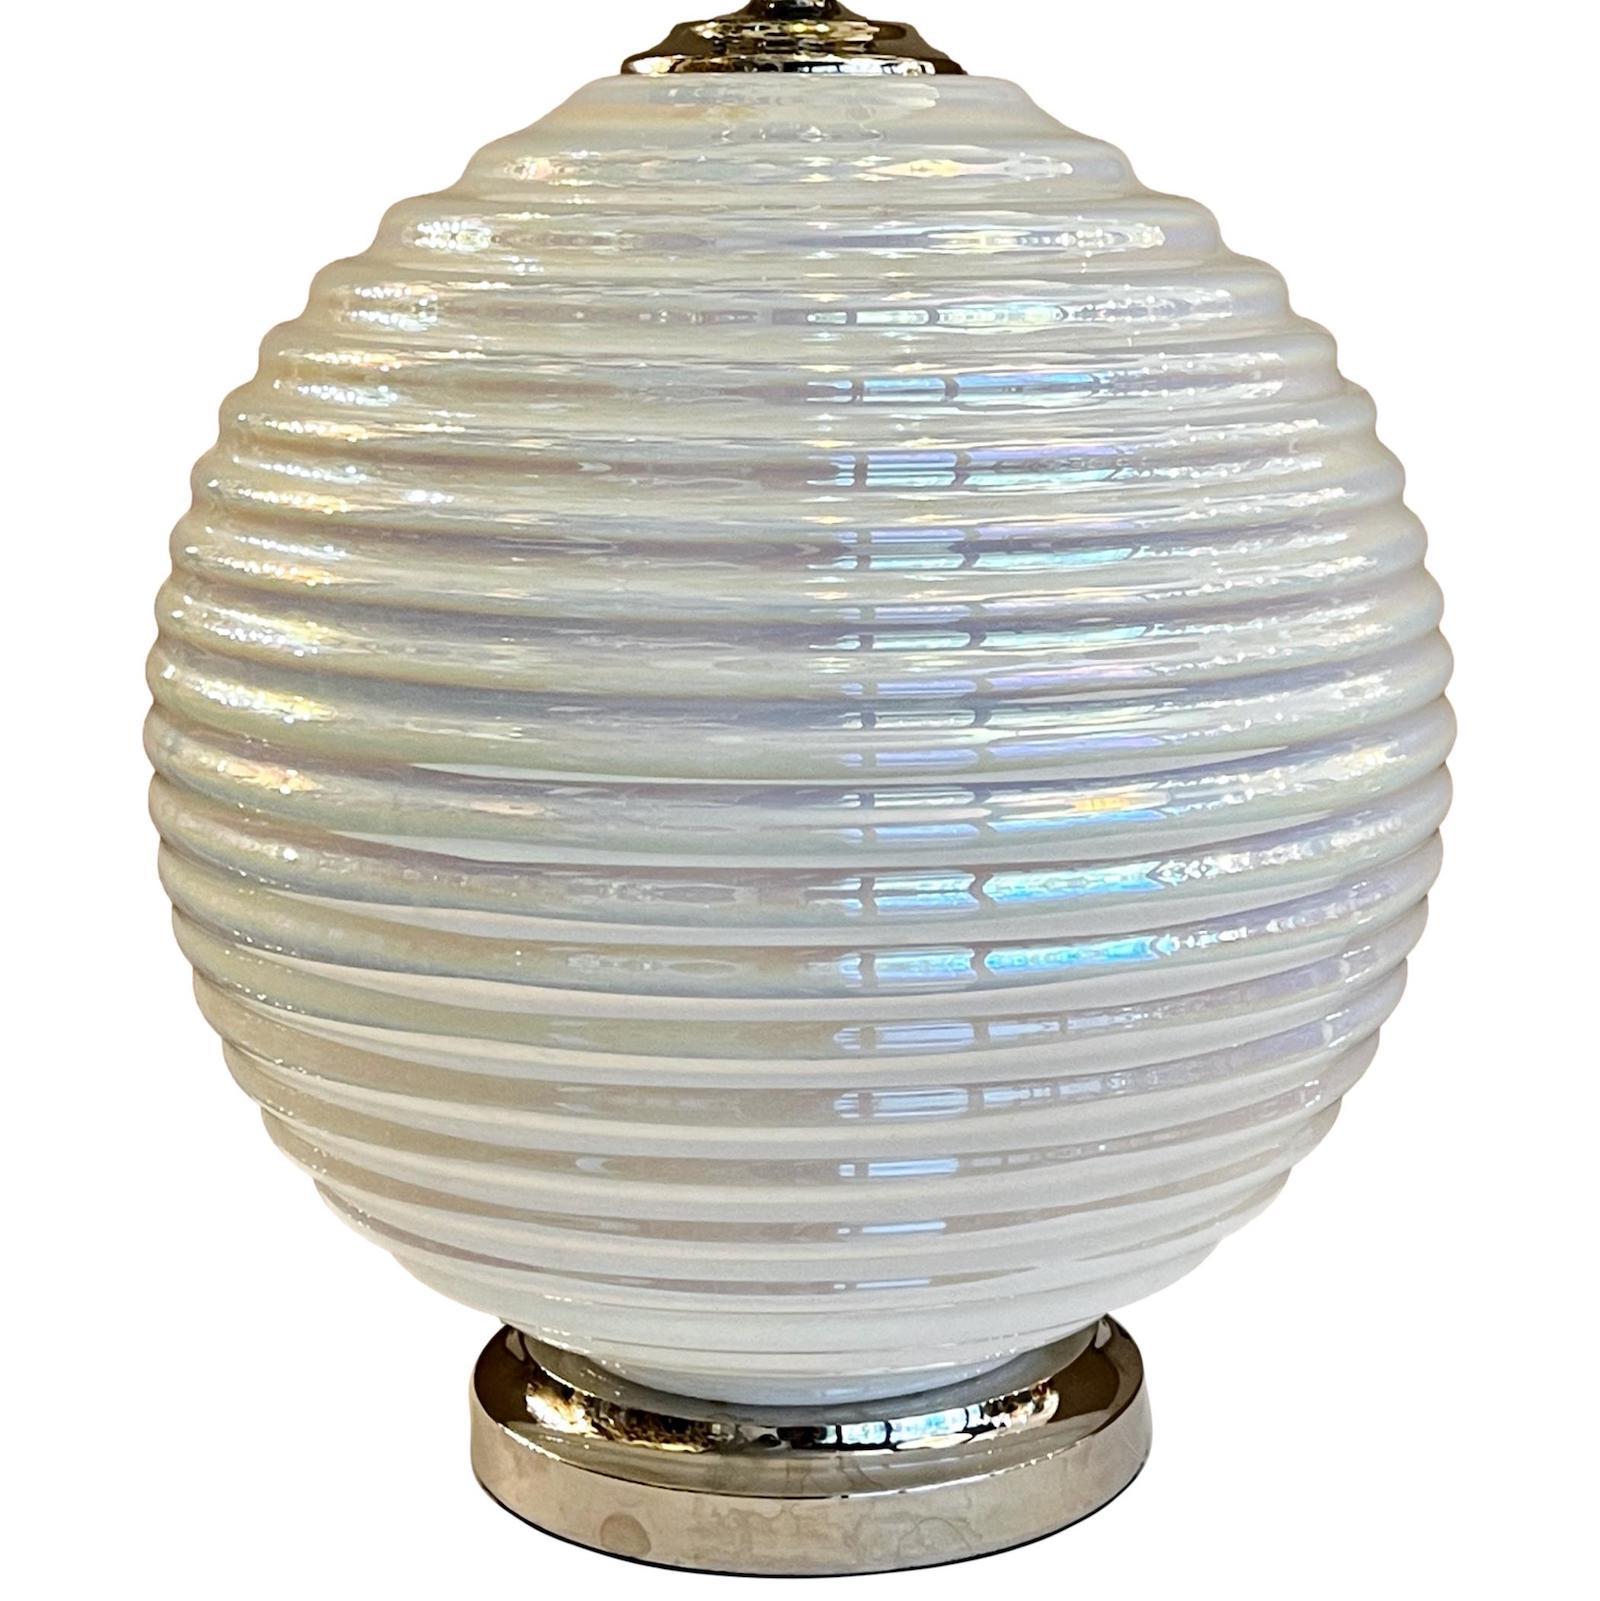 Eine französische Tischlampe aus weißem, perlmuttfarbenem, irisierendem Glas mit silbernem Sockel aus den 1960er Jahren.

Abmessungen:
Höhe des Körpers: 18